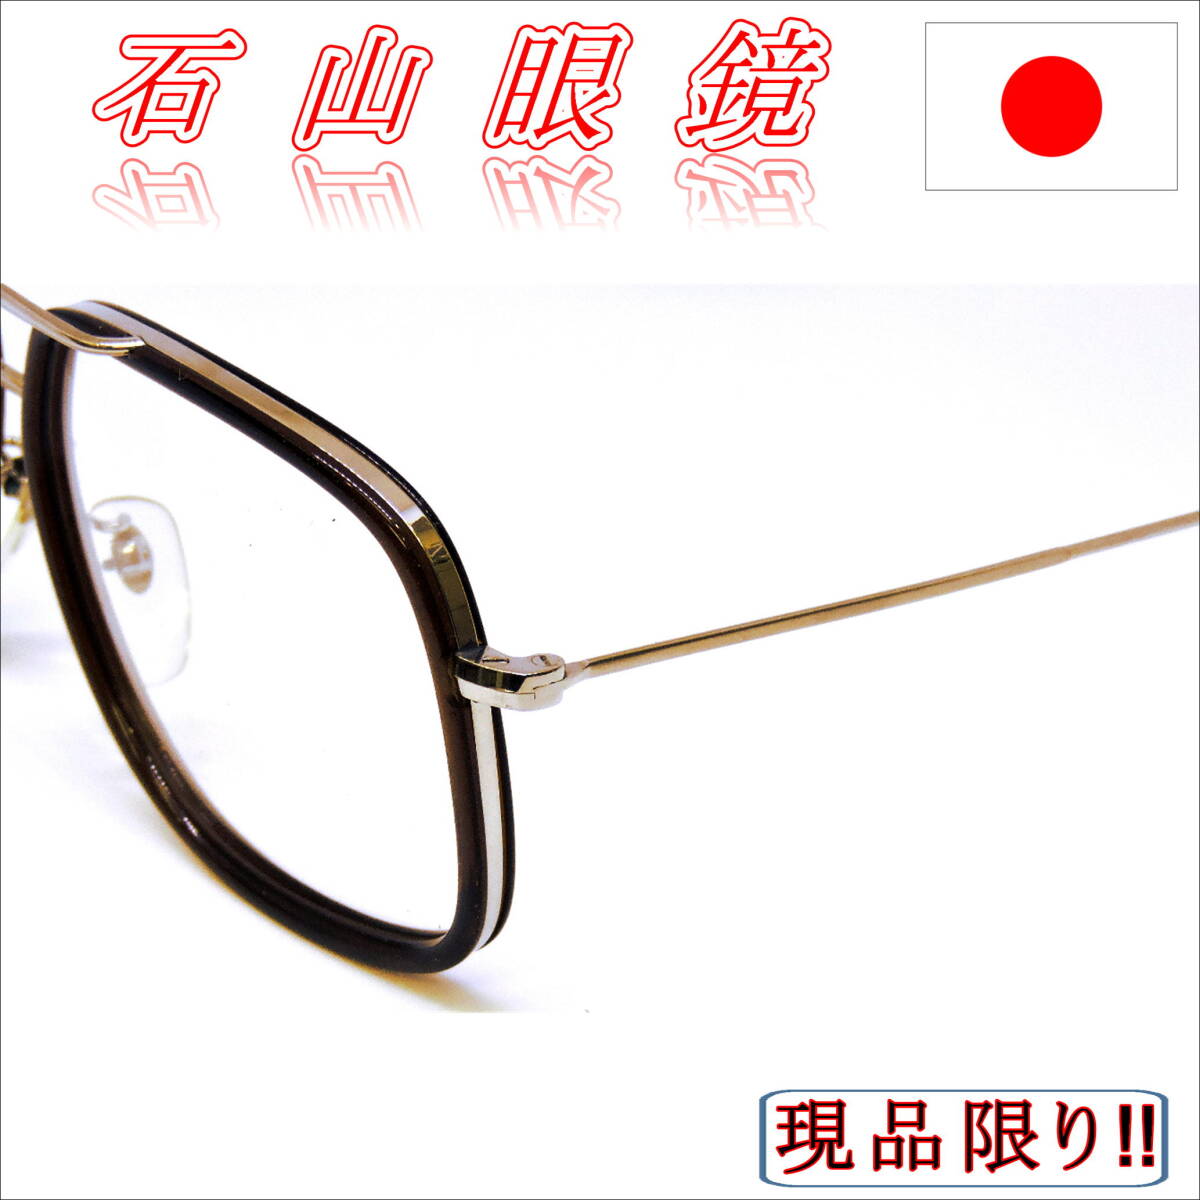 昭和レトロ・石山眼鏡・セルとメタルのコンビフレーム・超貴重・激レア・F-005・￥15000-の画像6